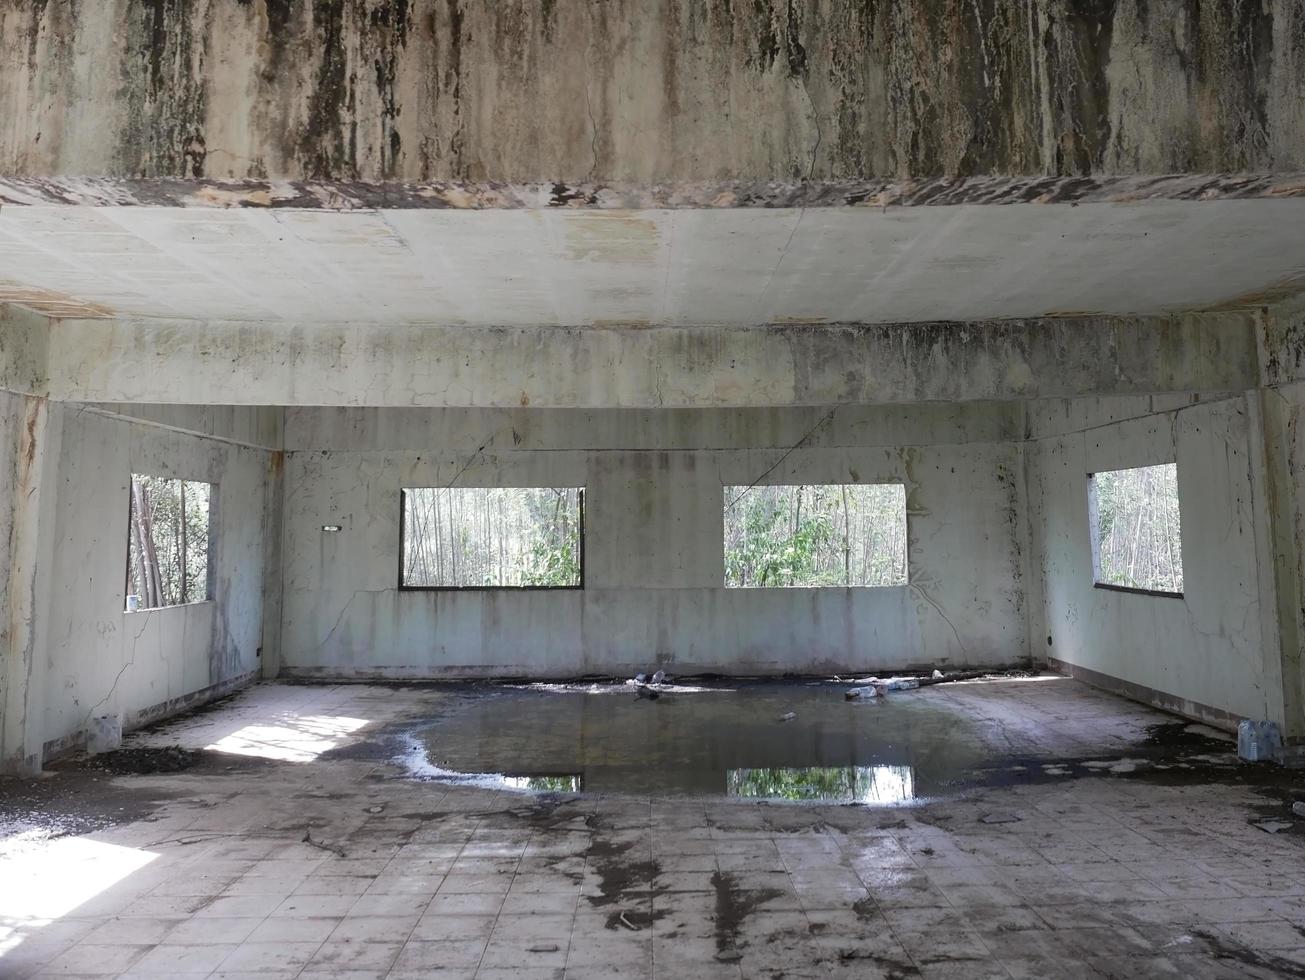 verlassenes gebäude verlassenes zimmer mit rissigen wänden und abblätternder farbe es ist wasser im schrecken. foto